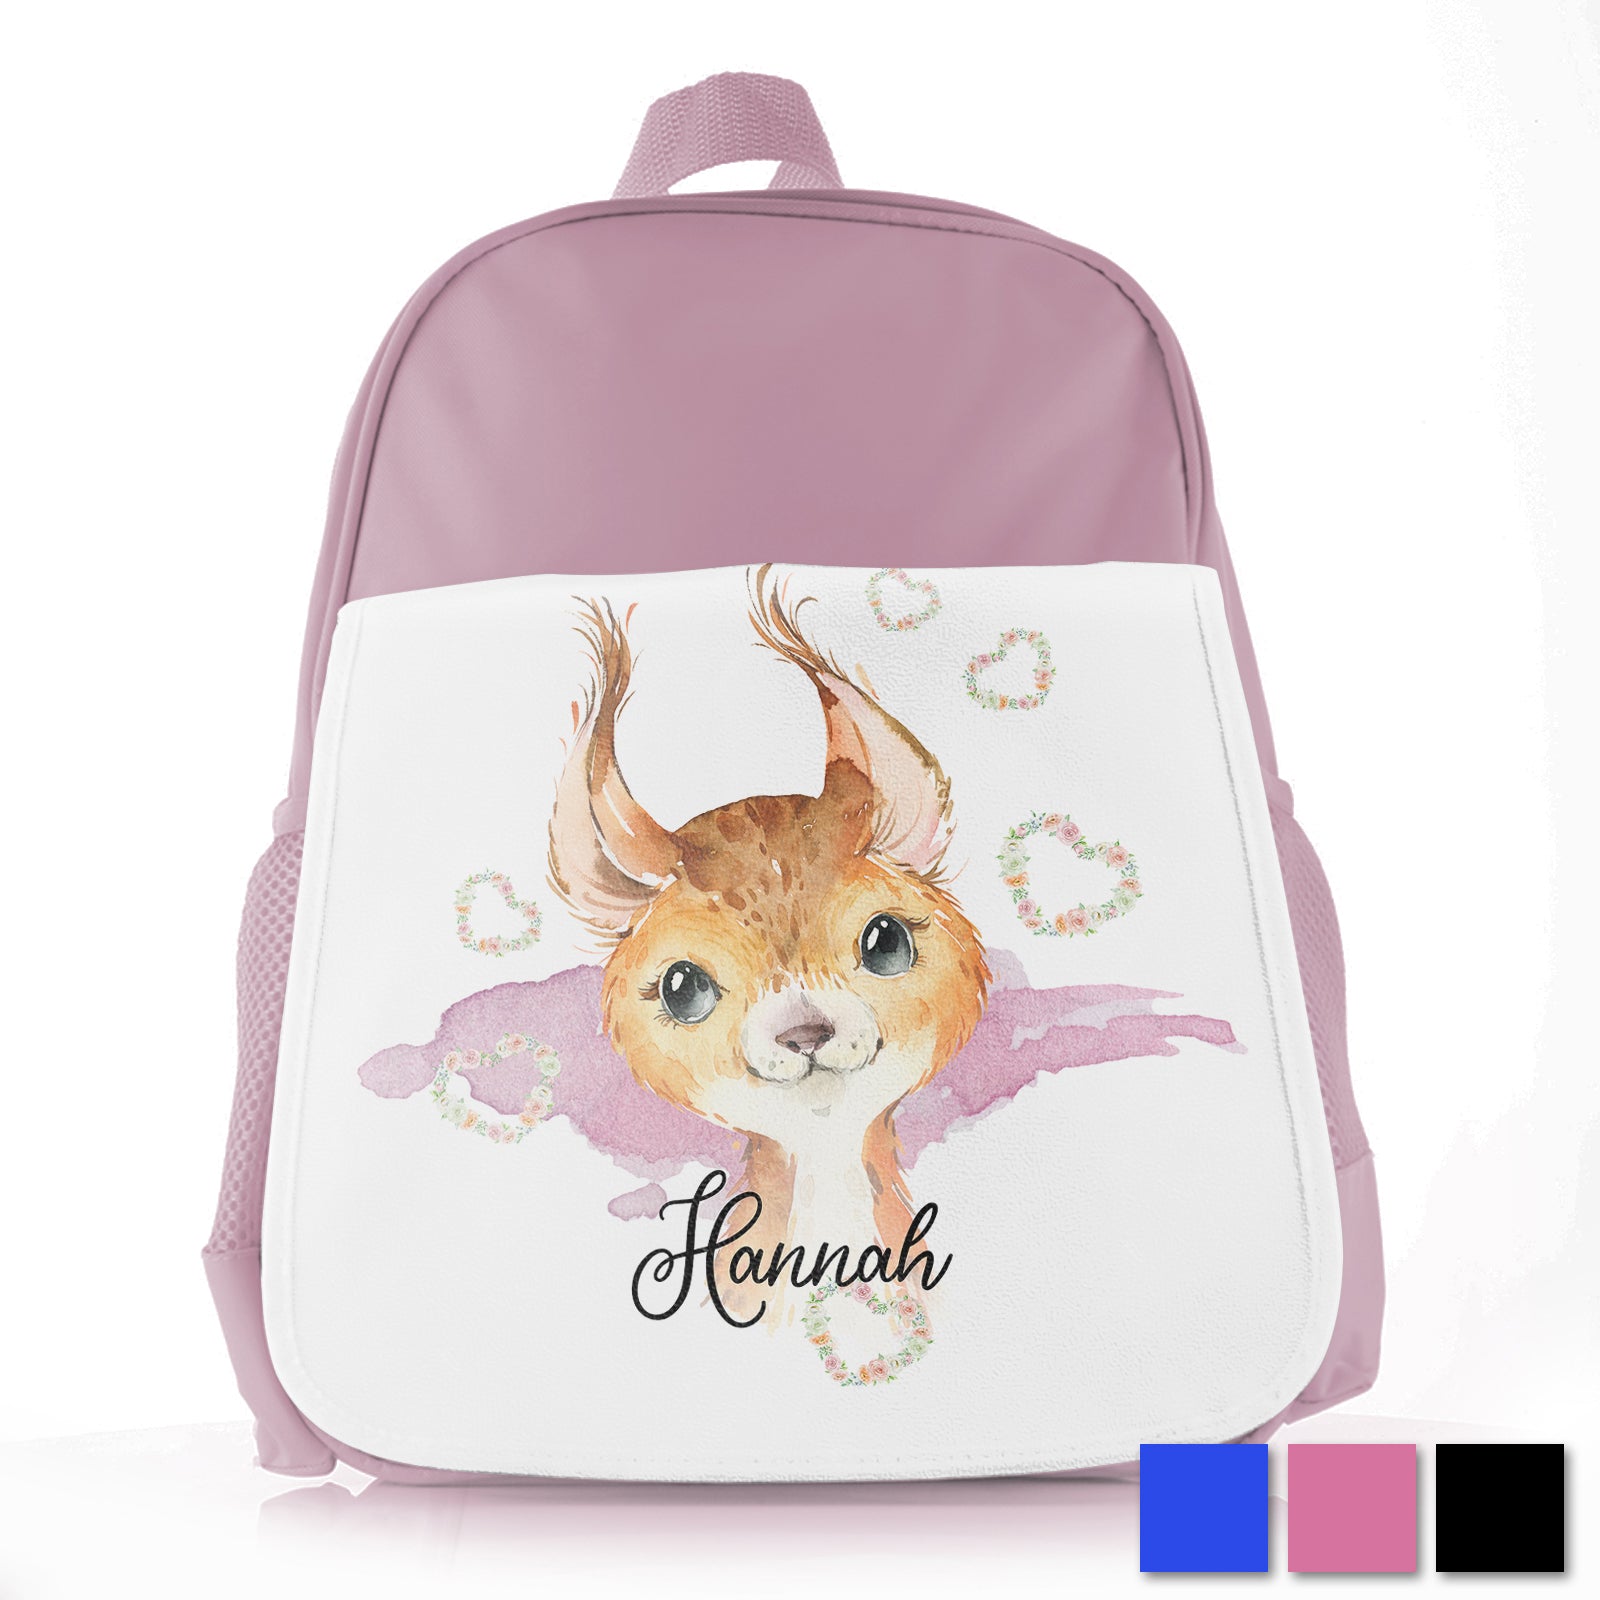 Personalised Red squirrel Hearts Kids School Bag/Rucksack